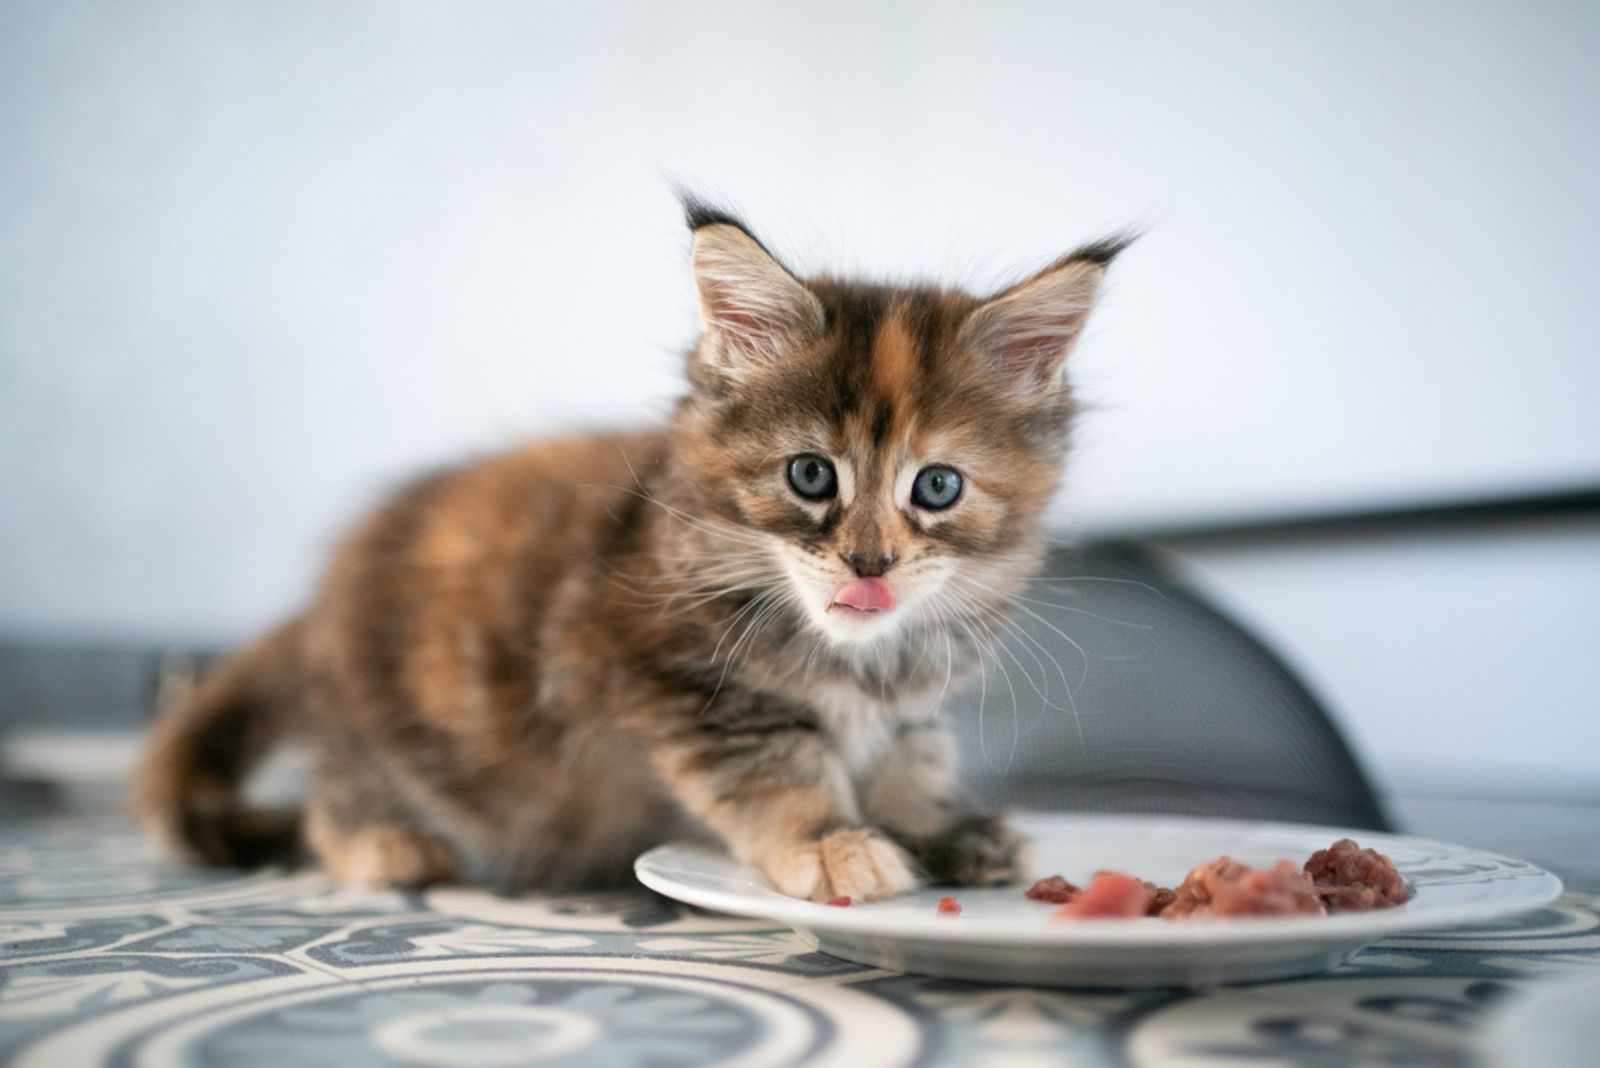 een ruig kitten eet van een bord